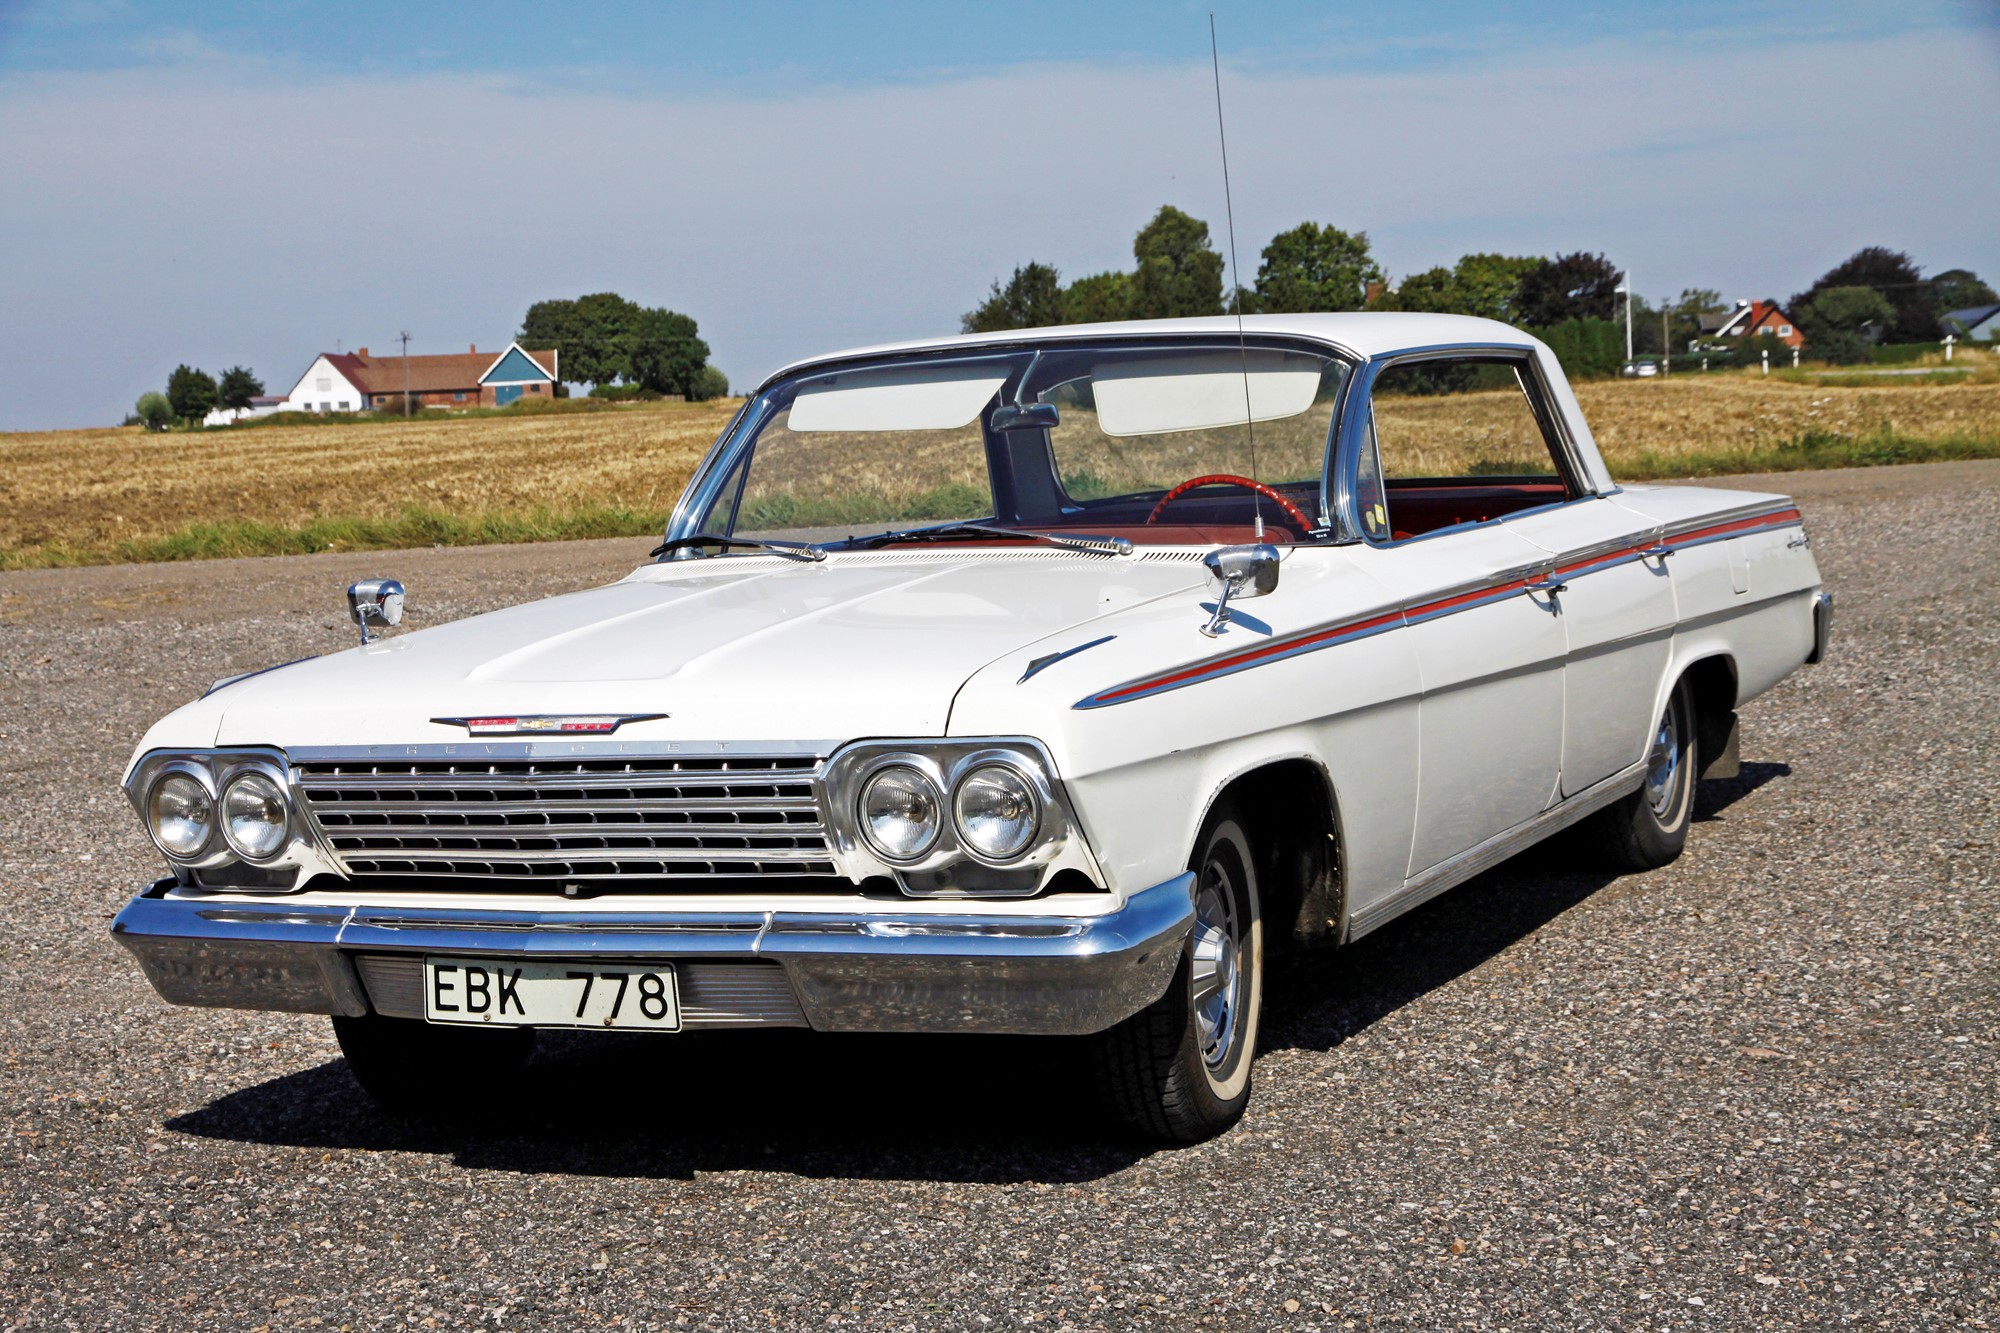 En superfin Svensksåld Chevrolet Impala fyrdörrars hardtop från 1962 som aldrig renoverats. Första ägaren var en slaktare från norra Skåne.